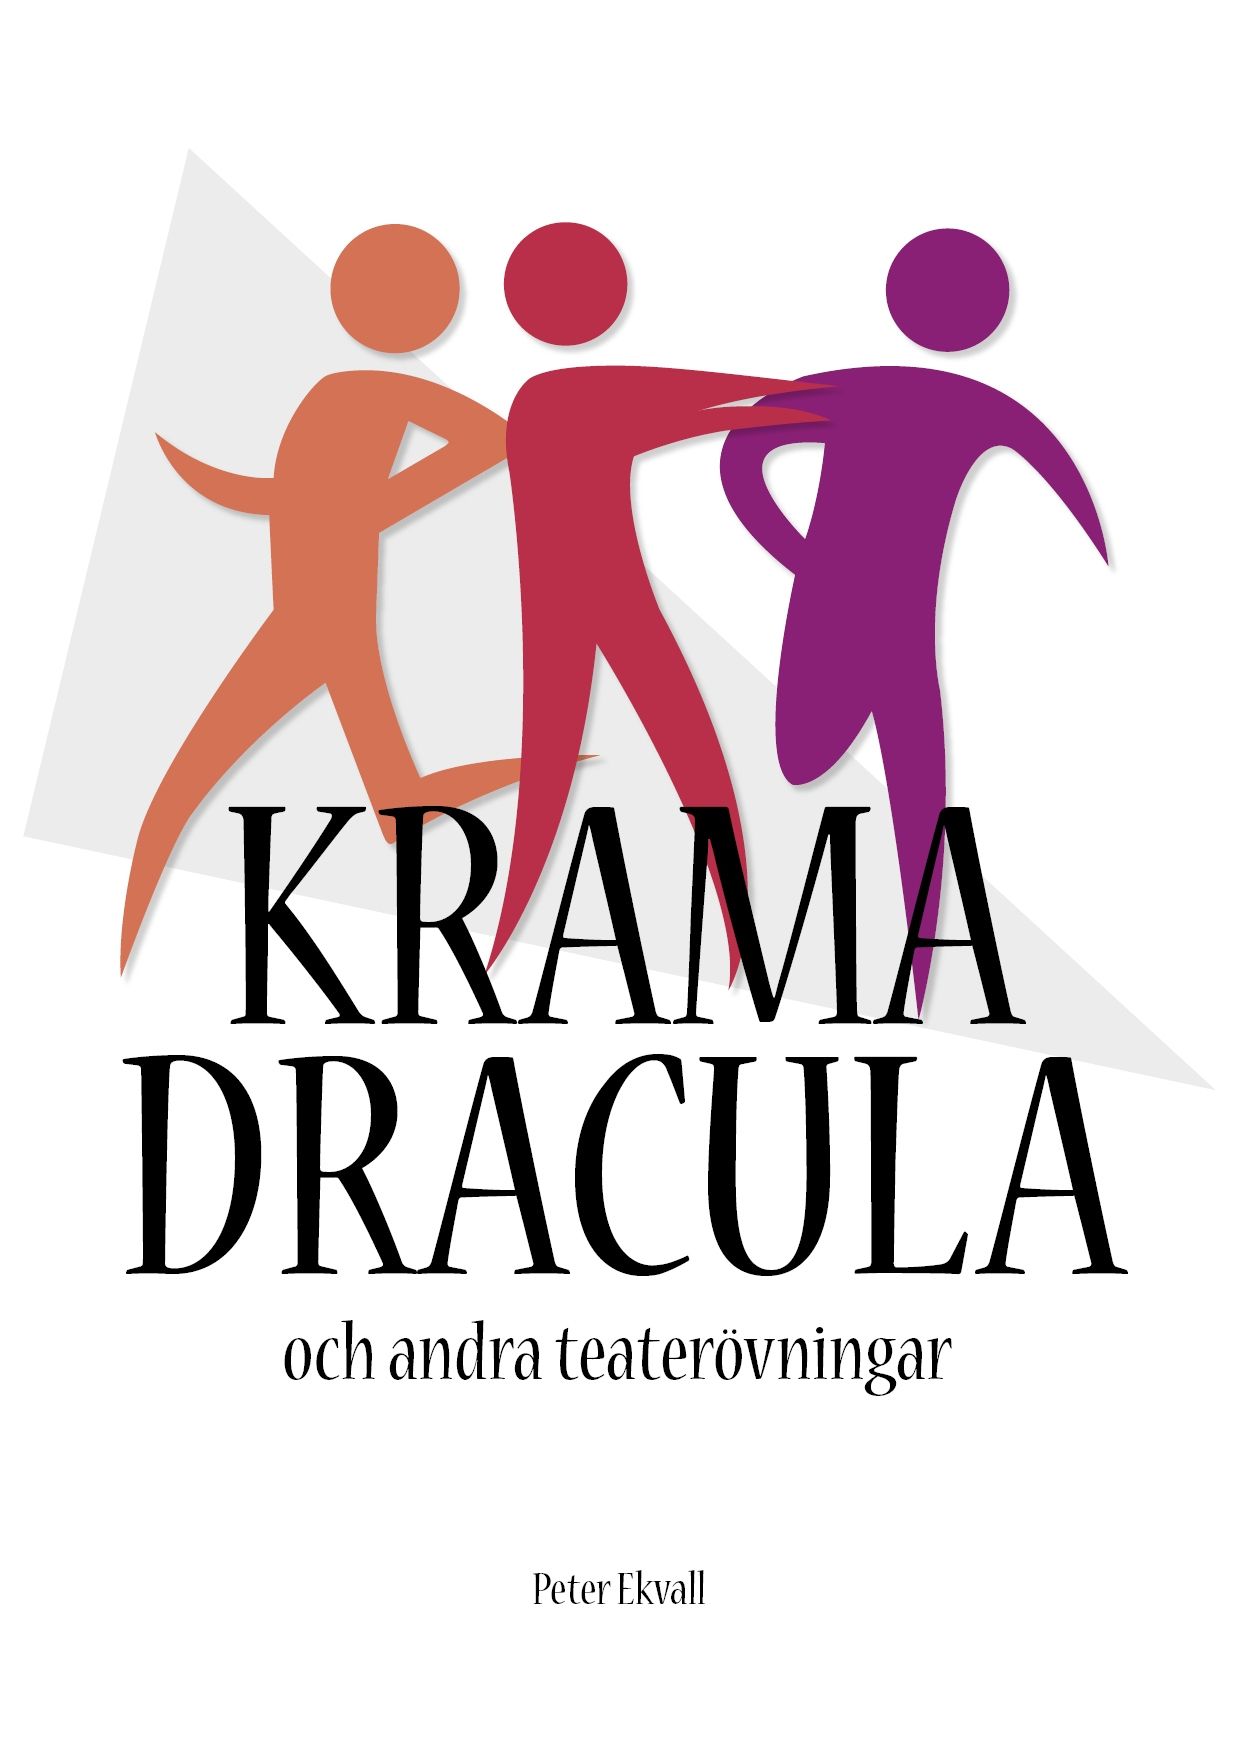 Krama Dracula och andra teaterövningar, e-bog af Peter Ekvall